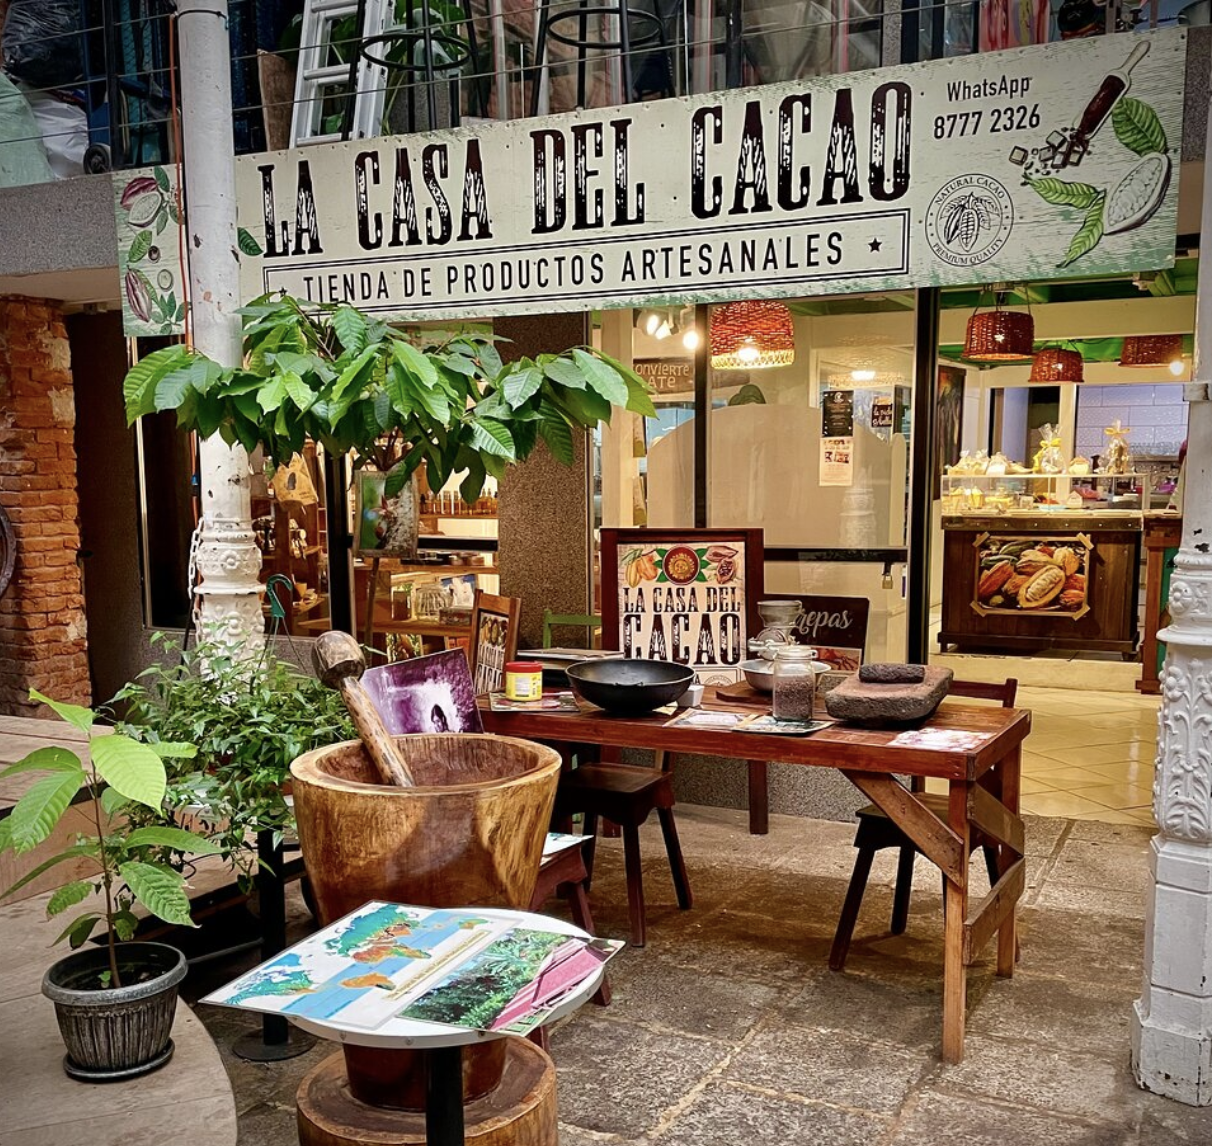 La Casa del Cacao